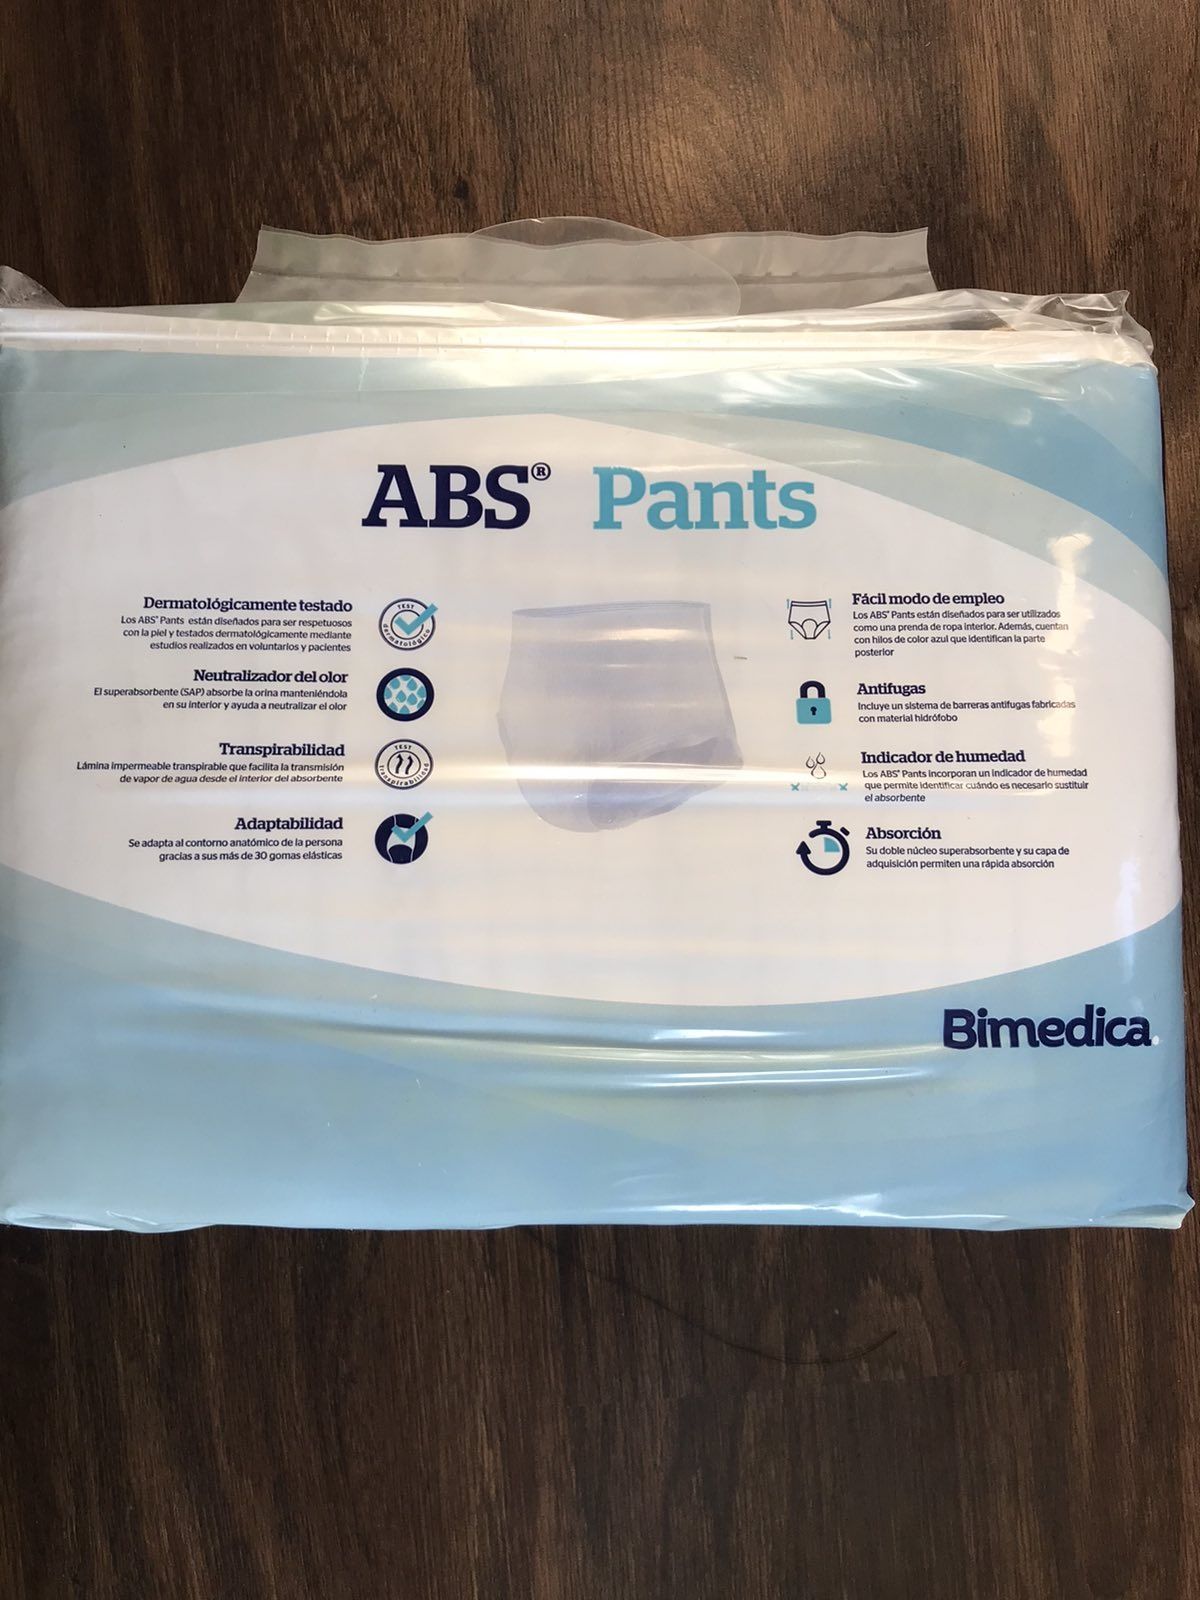 ABS Pants Iспанiя памперси 2,5 пачки